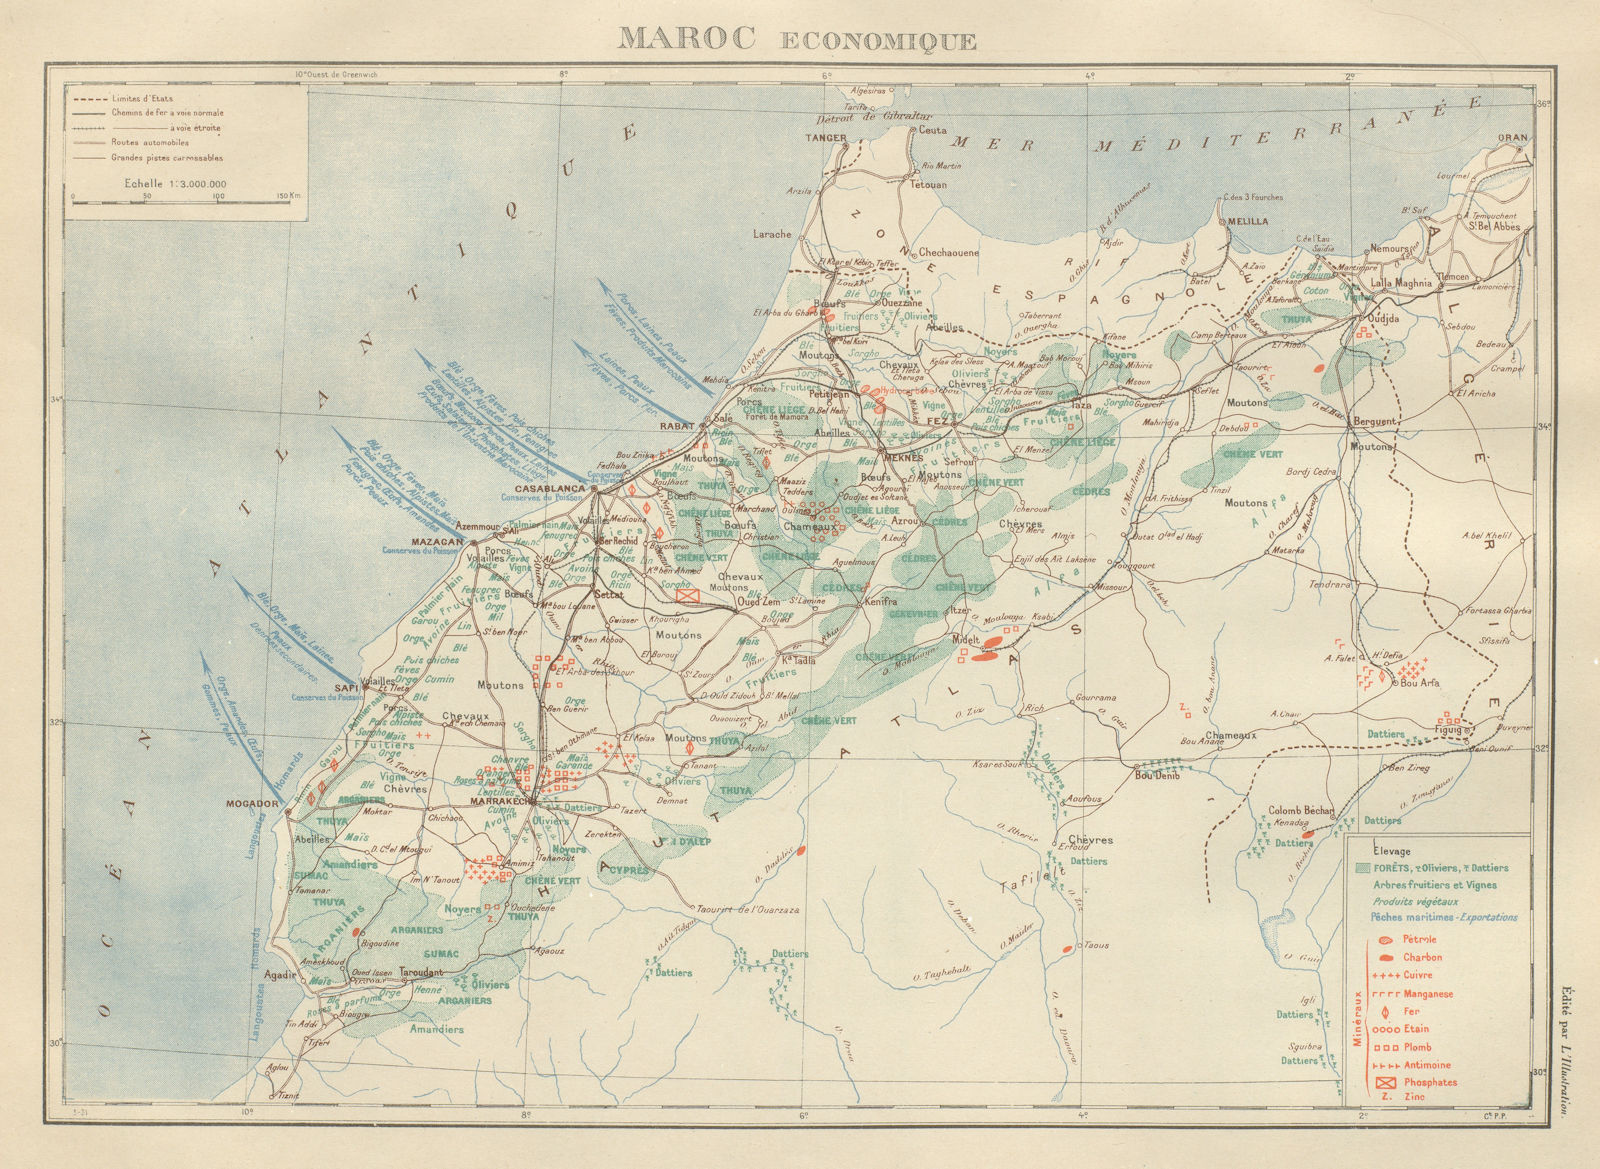 FRENCH MOROCCO ECONOMIC/RESOURCES Maroc Protectorat français economique 1931 map